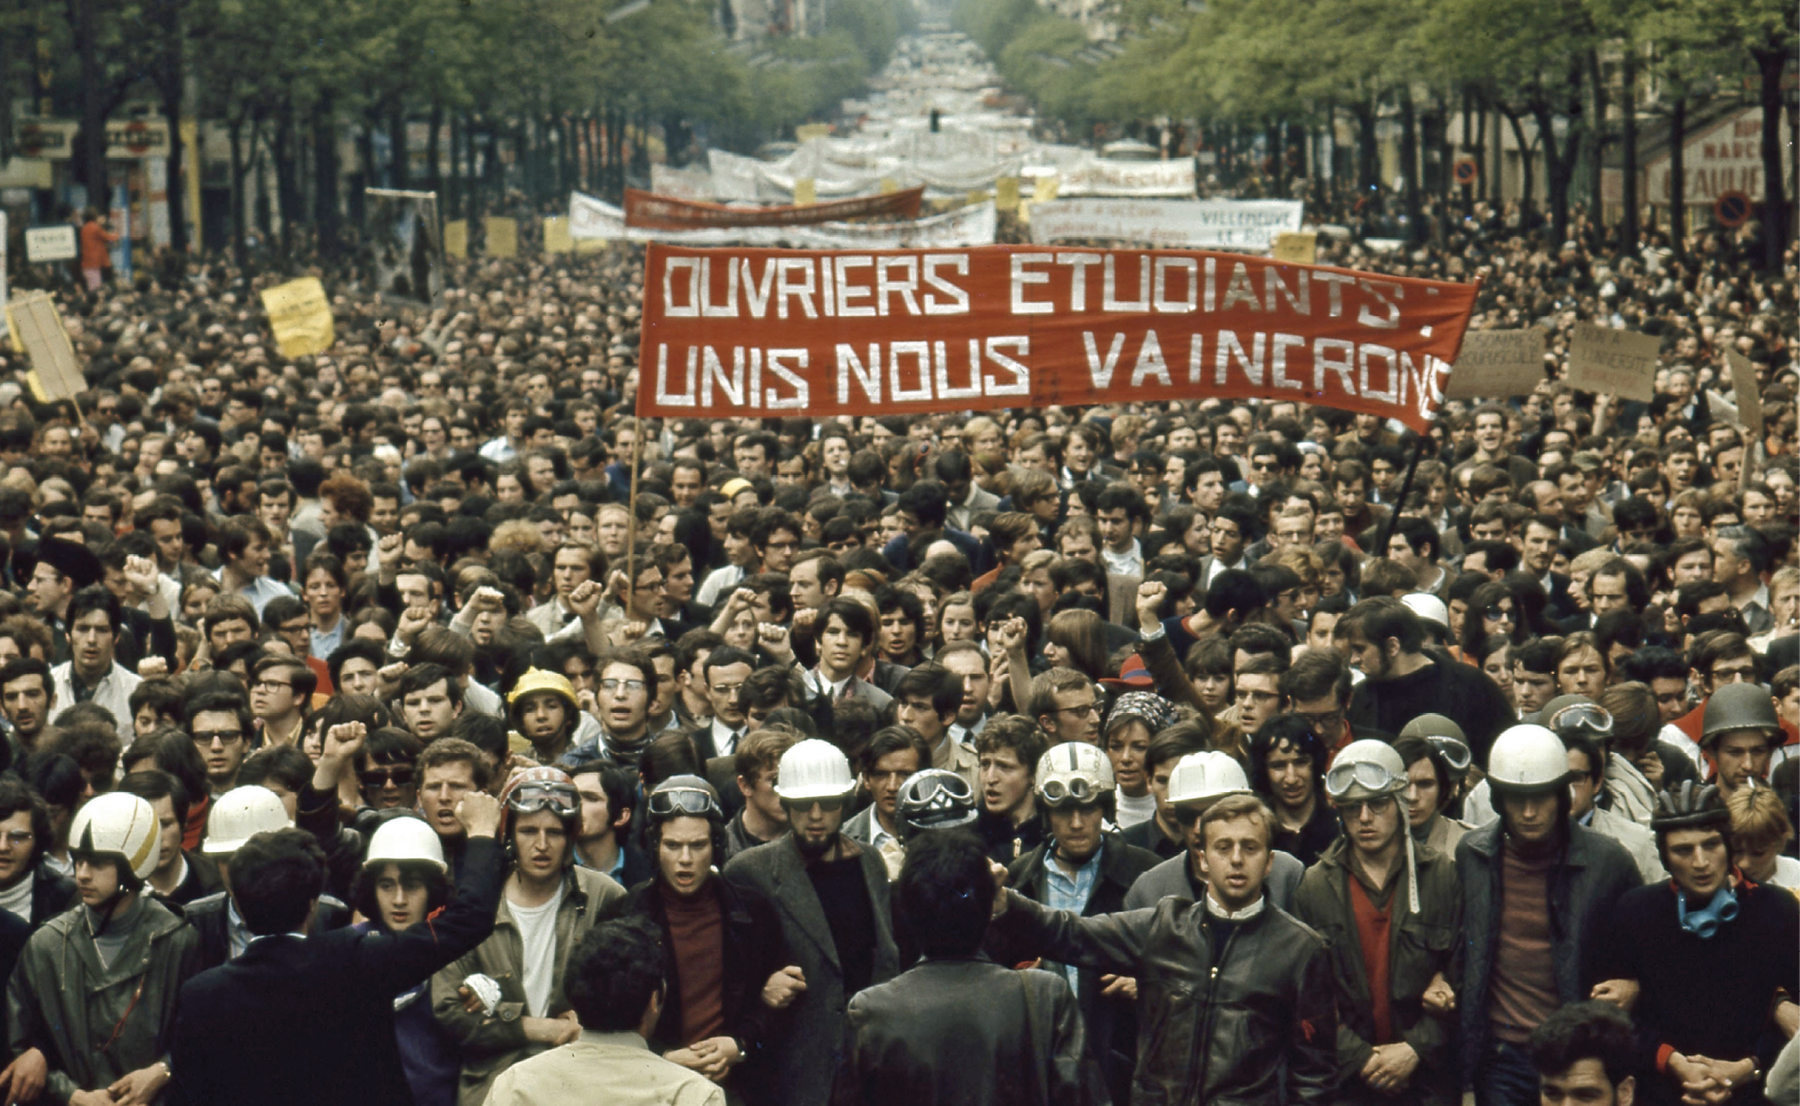 Fotografia. Milhares de pessoas em uma manifestação ocupam uma longa avenida. Carregam faixas e cartazes. Na primeira fila estão lado a lado, de braços dados. No centro, uma faixa vermelha com os dizeres em francês.